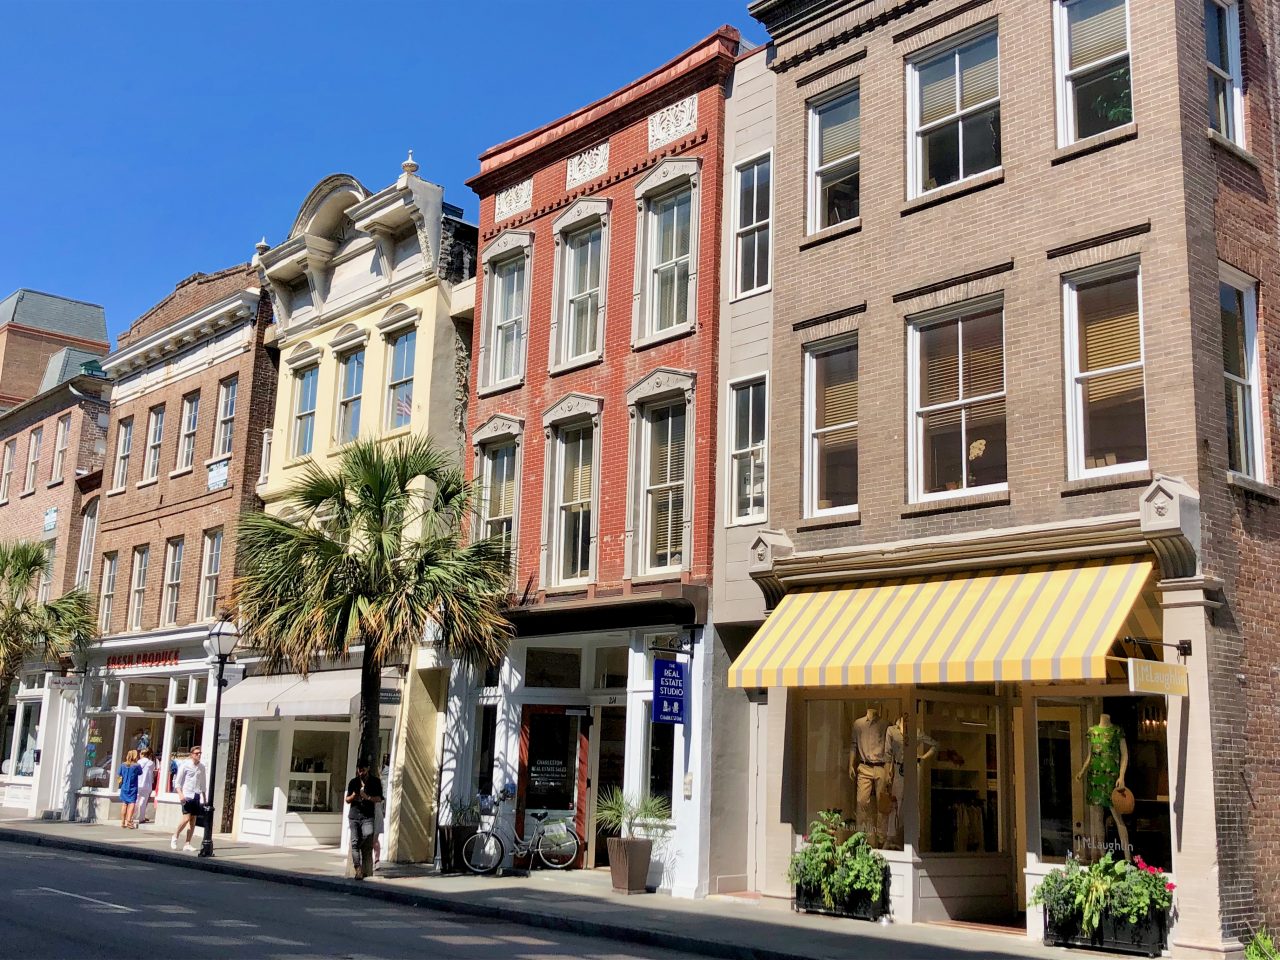 Buildings on King Street in Charleston, SC